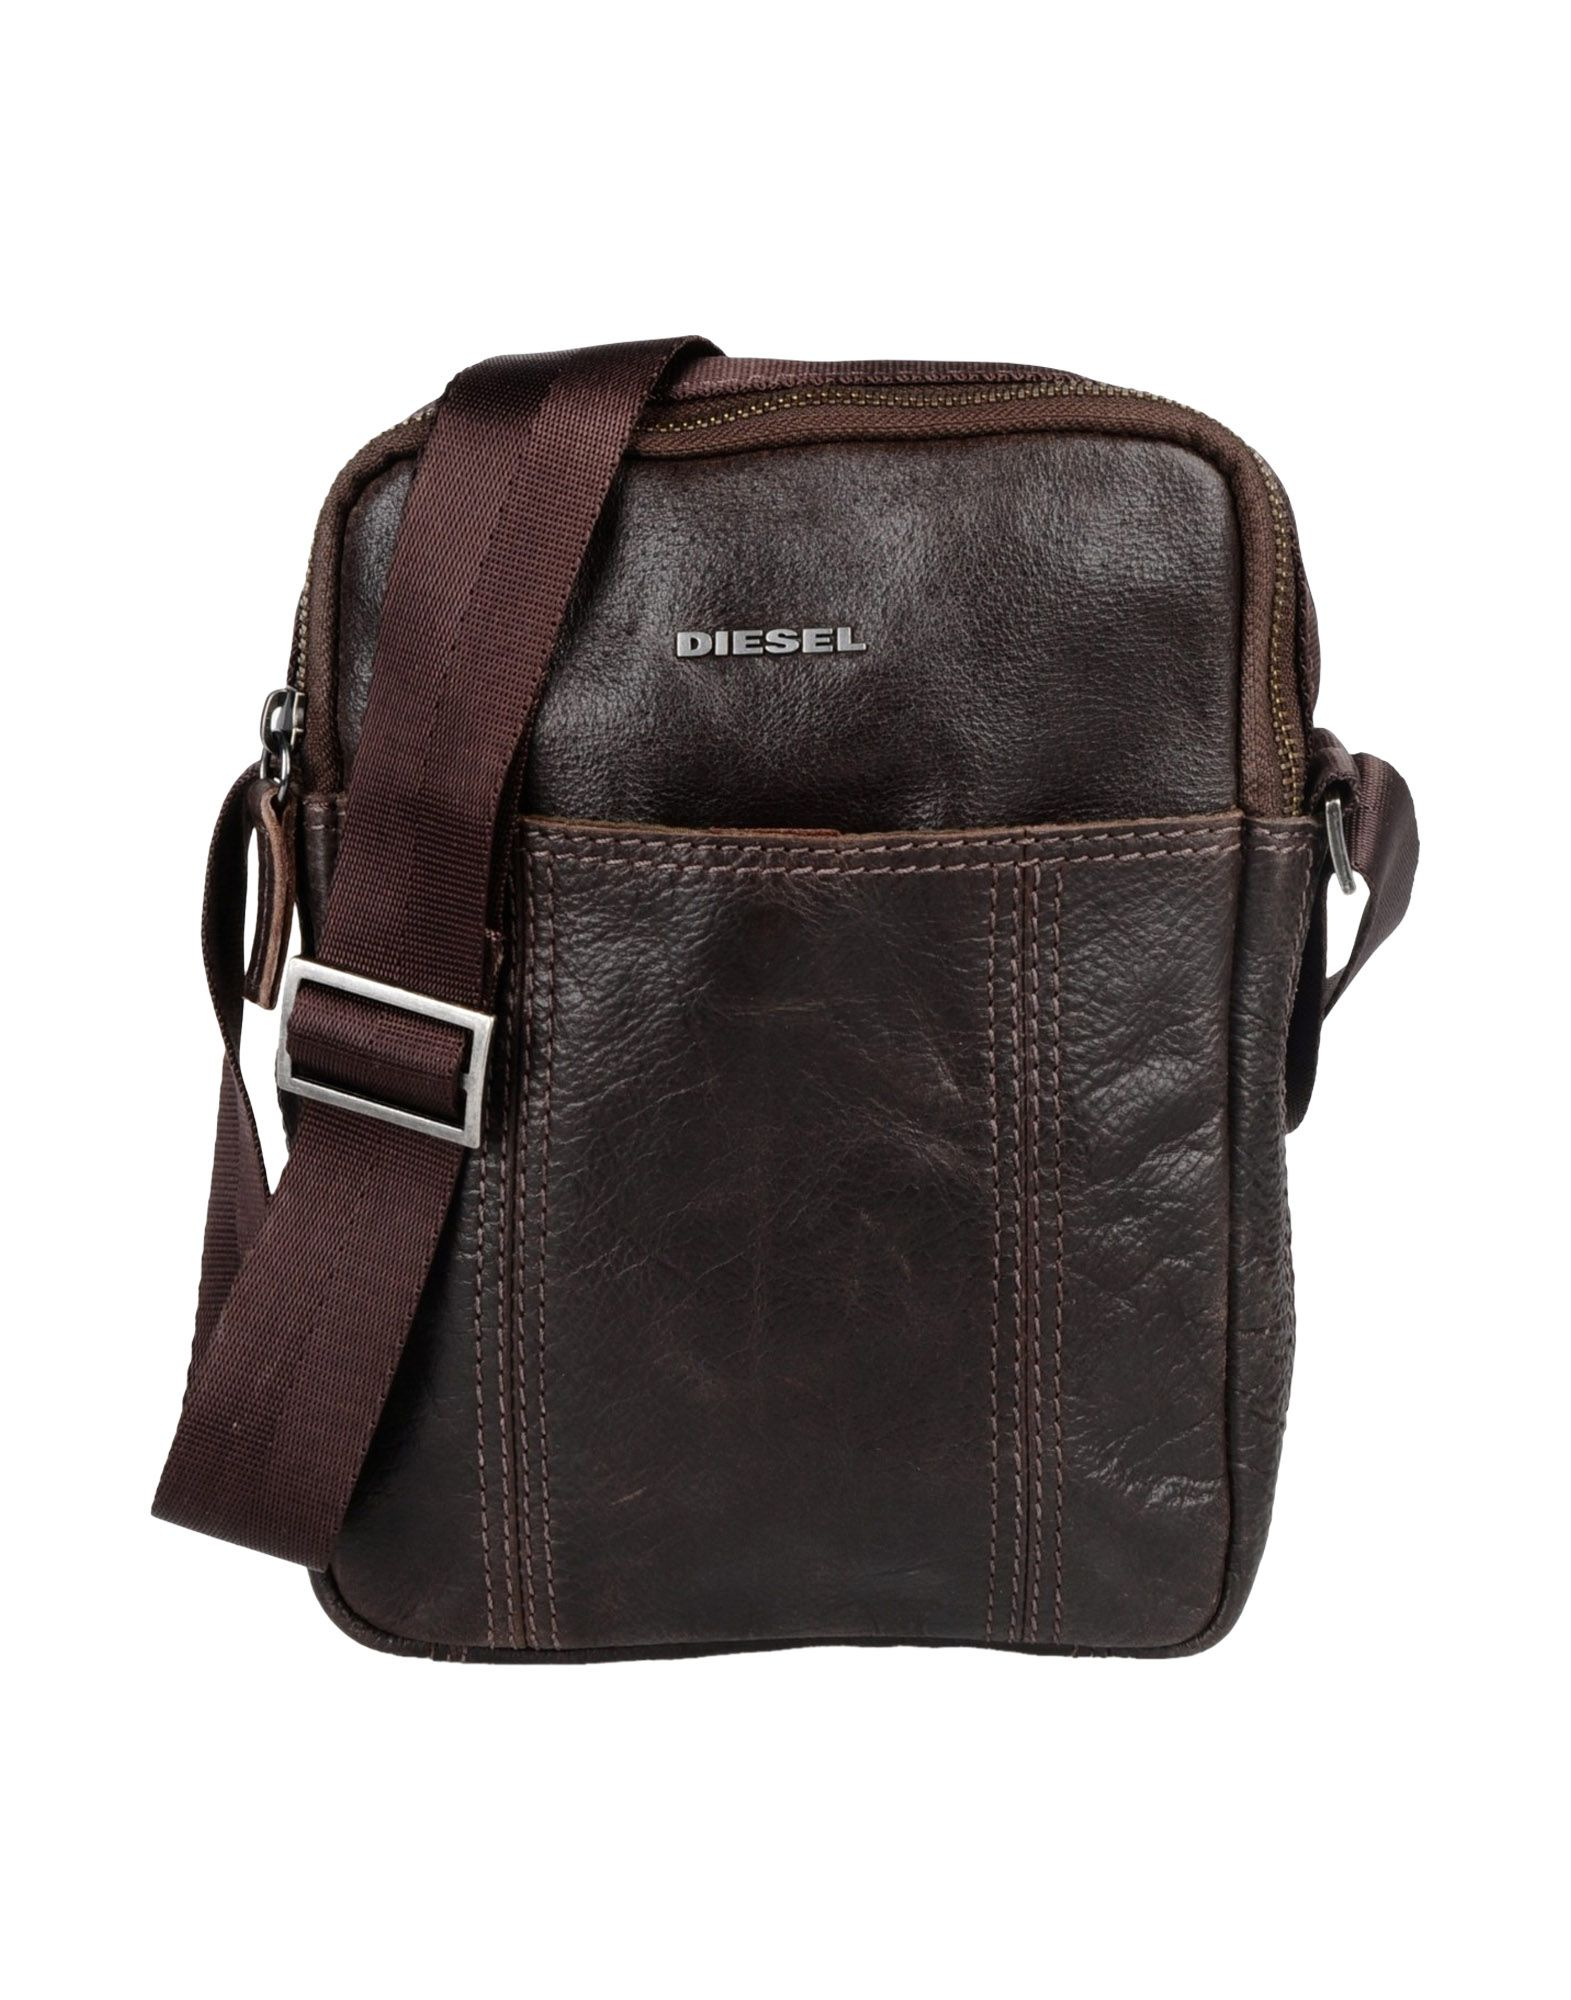 Diesel Medium Leather Bag in Brown for Men (Dark brown) | Lyst